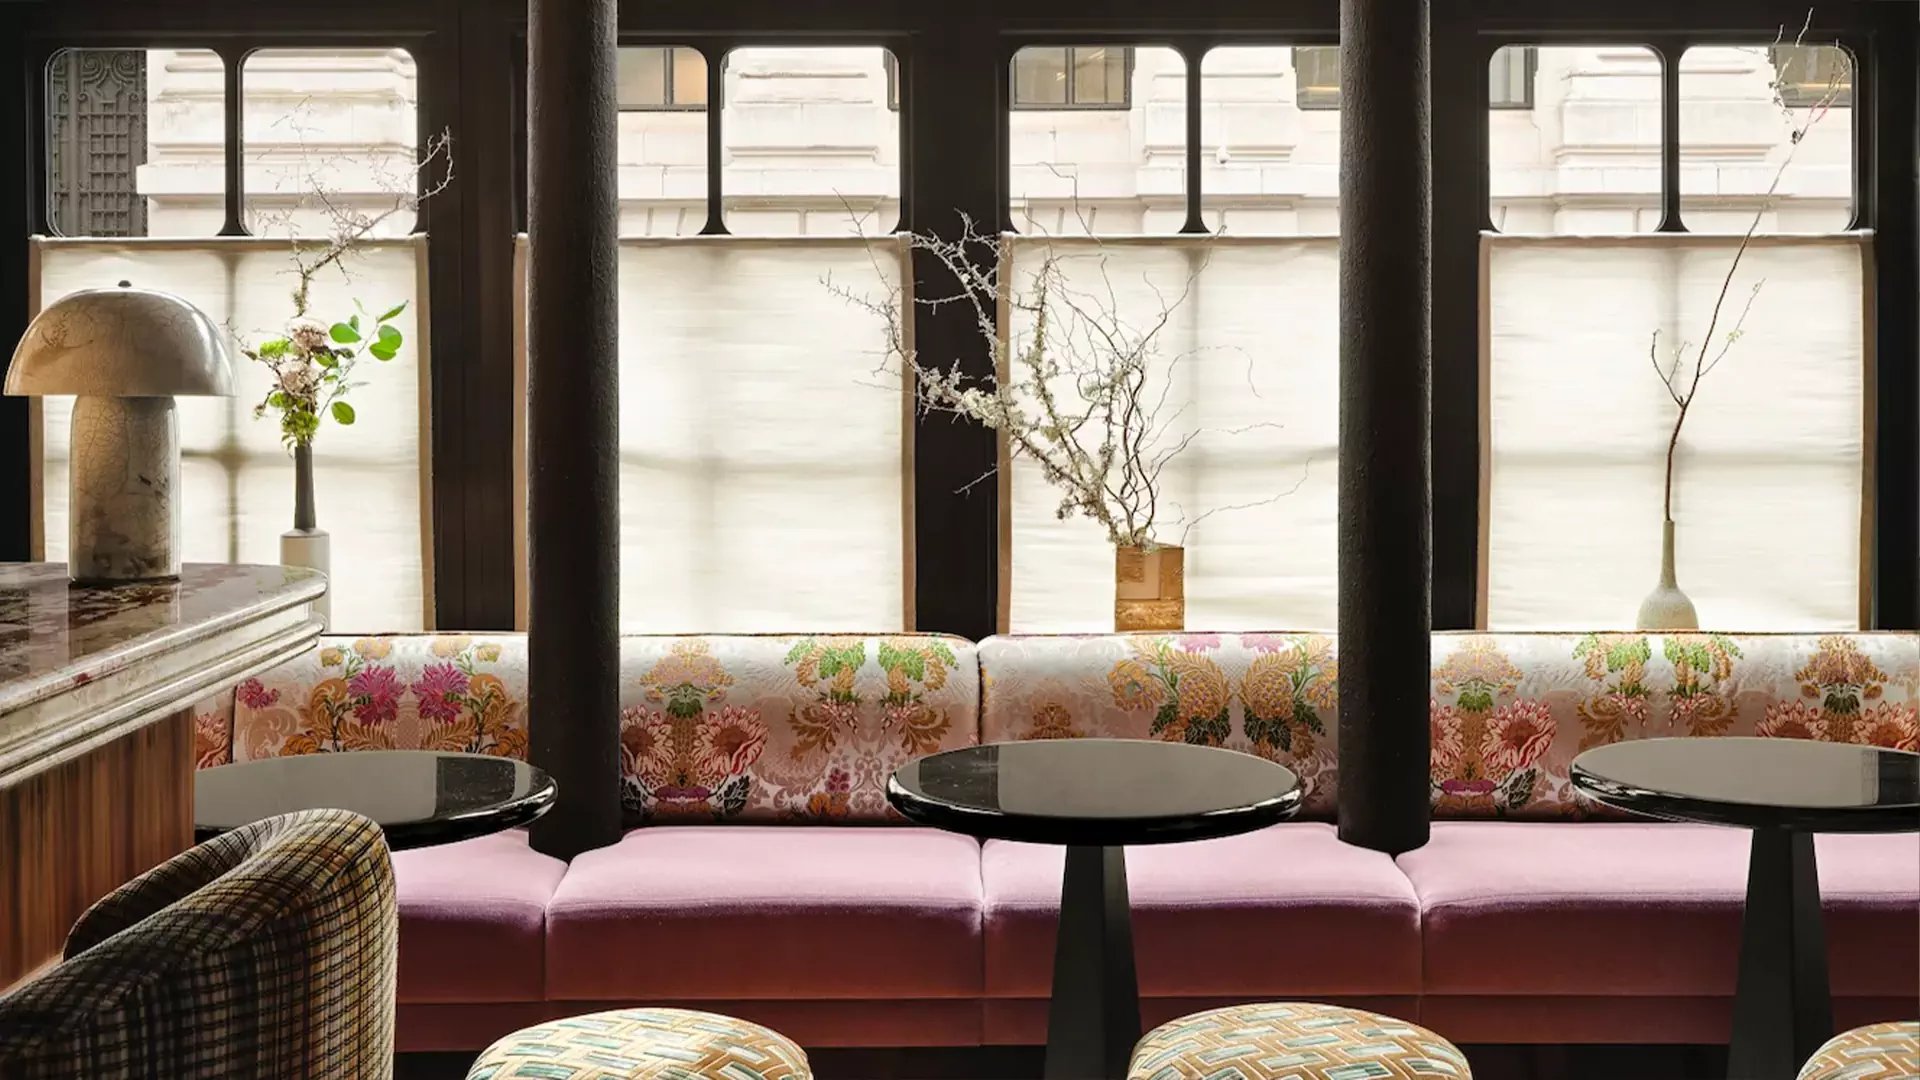 Растительные принты, теплая древесина и оммажи Азии в интерьере парижского отеля — проект Лауры Гонсалес